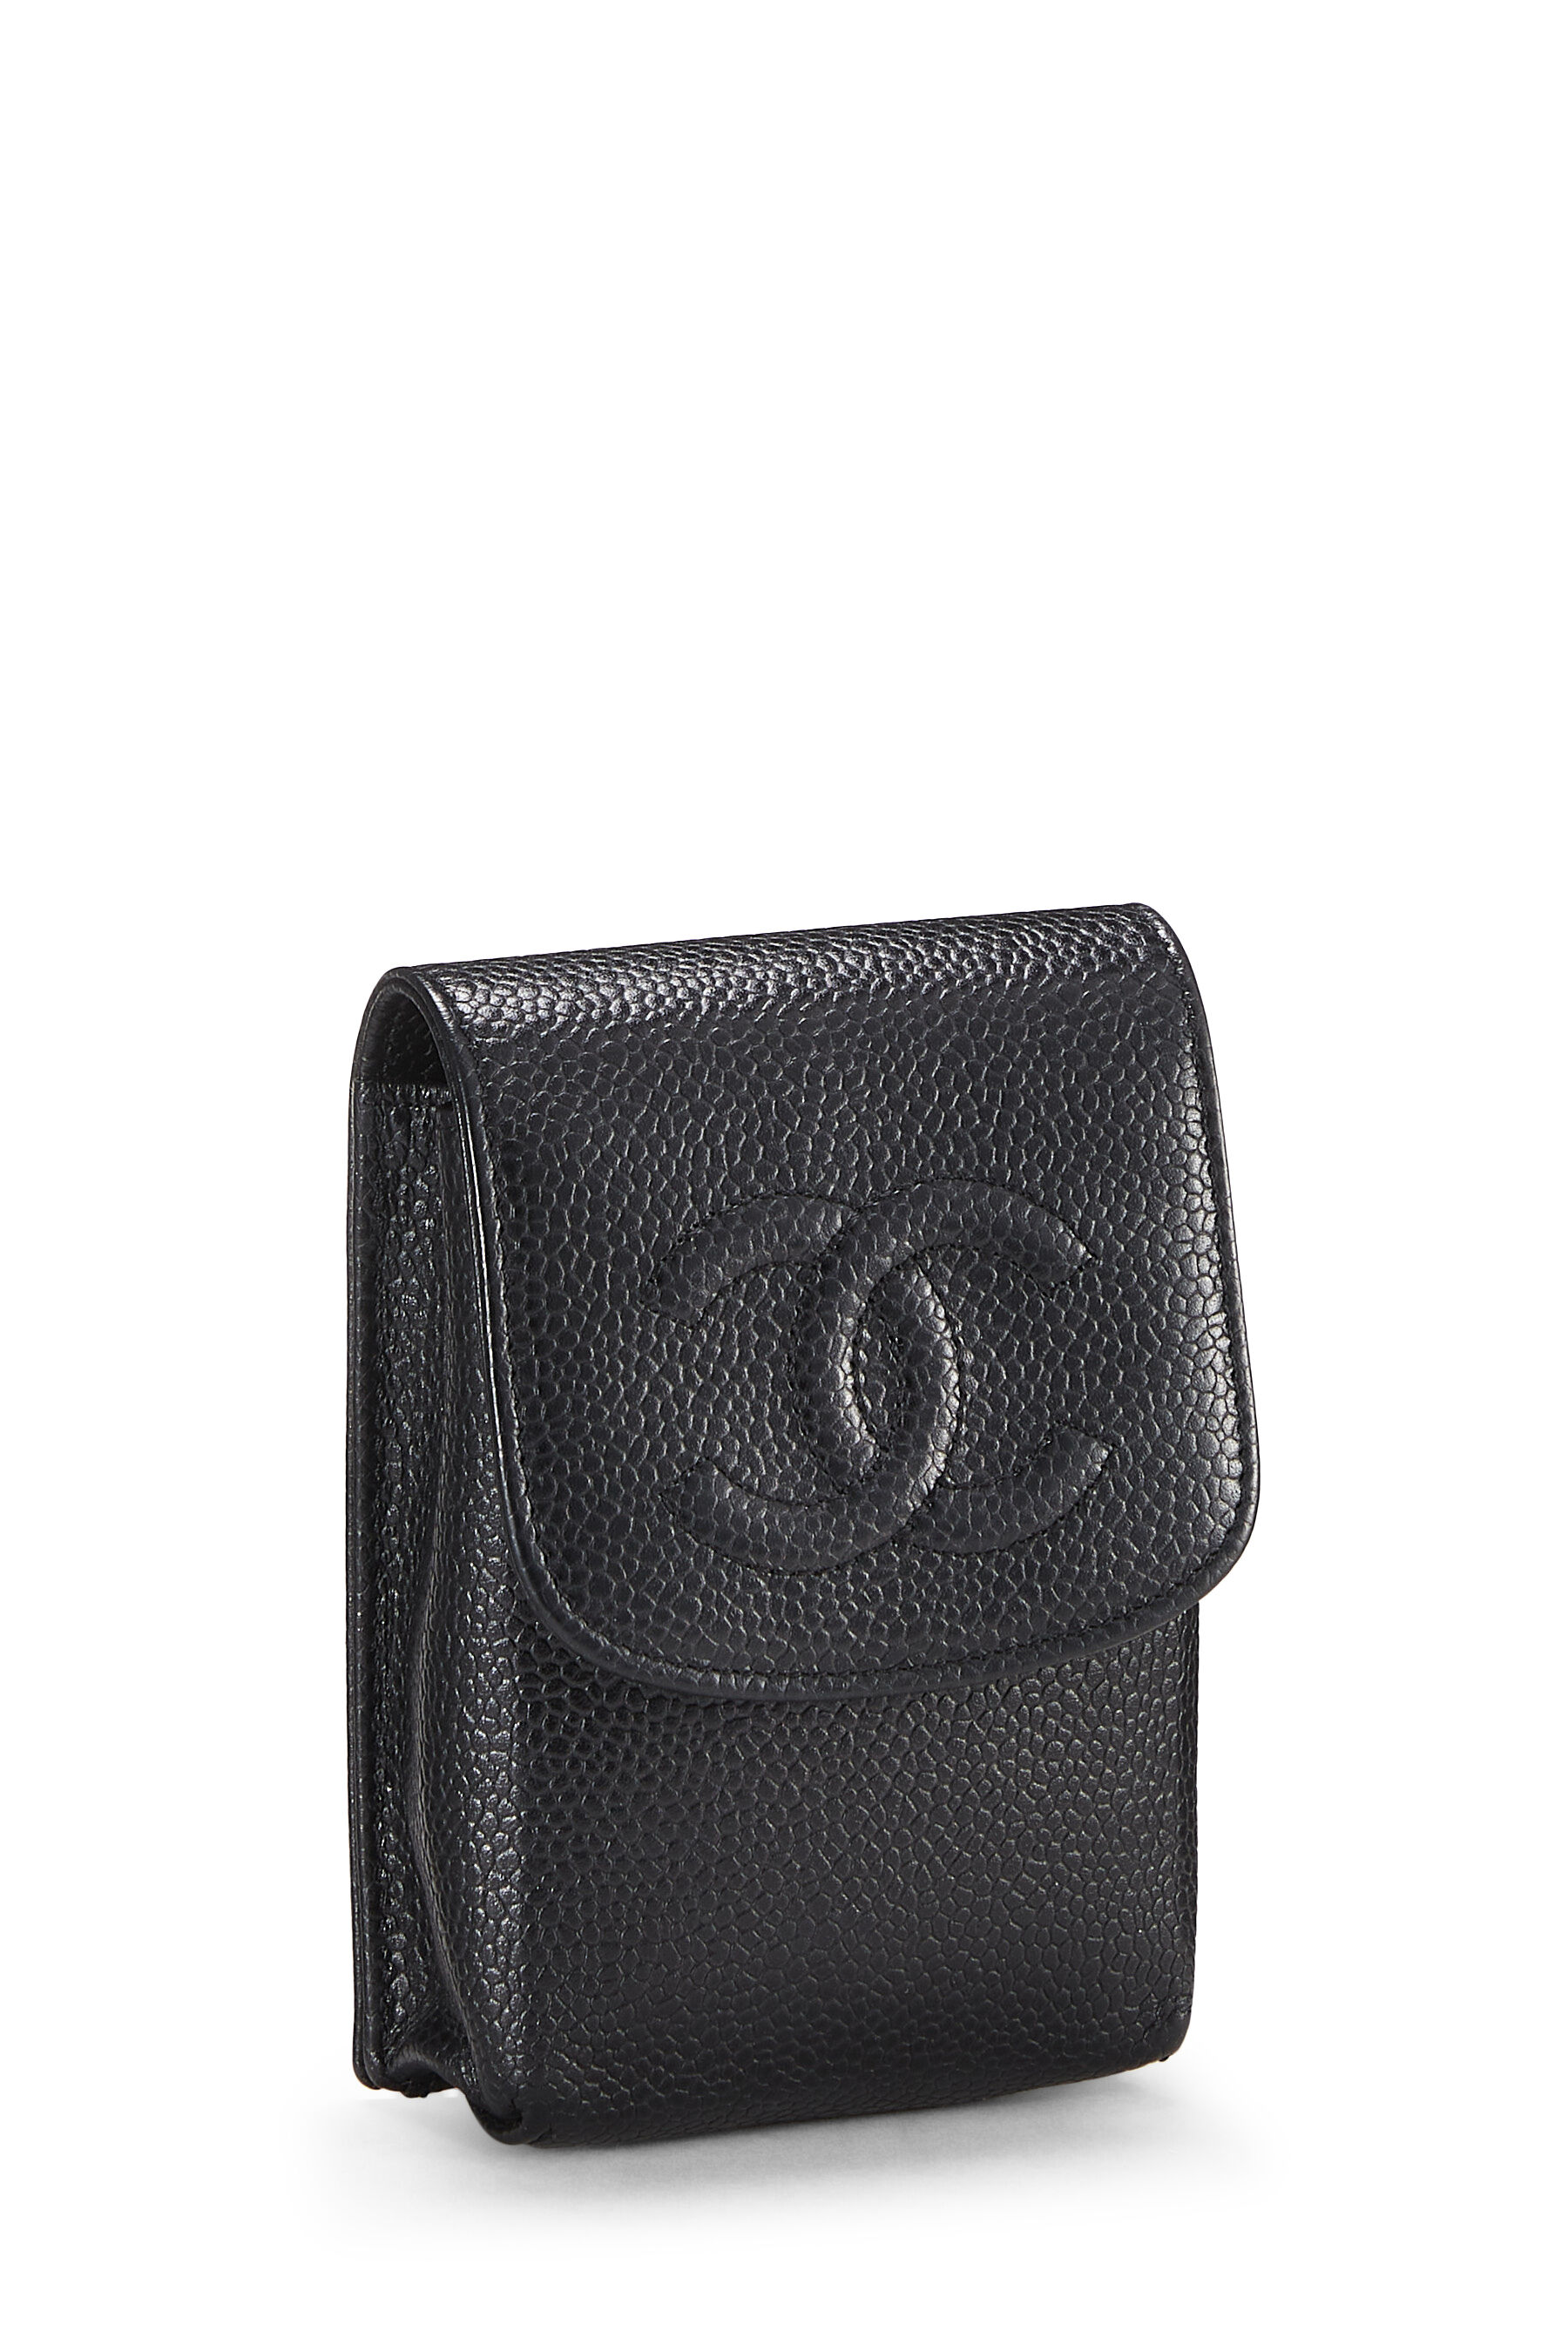 Chanel Black Caviar 'CC' Cigarette Case Q6A0OM0FKB007